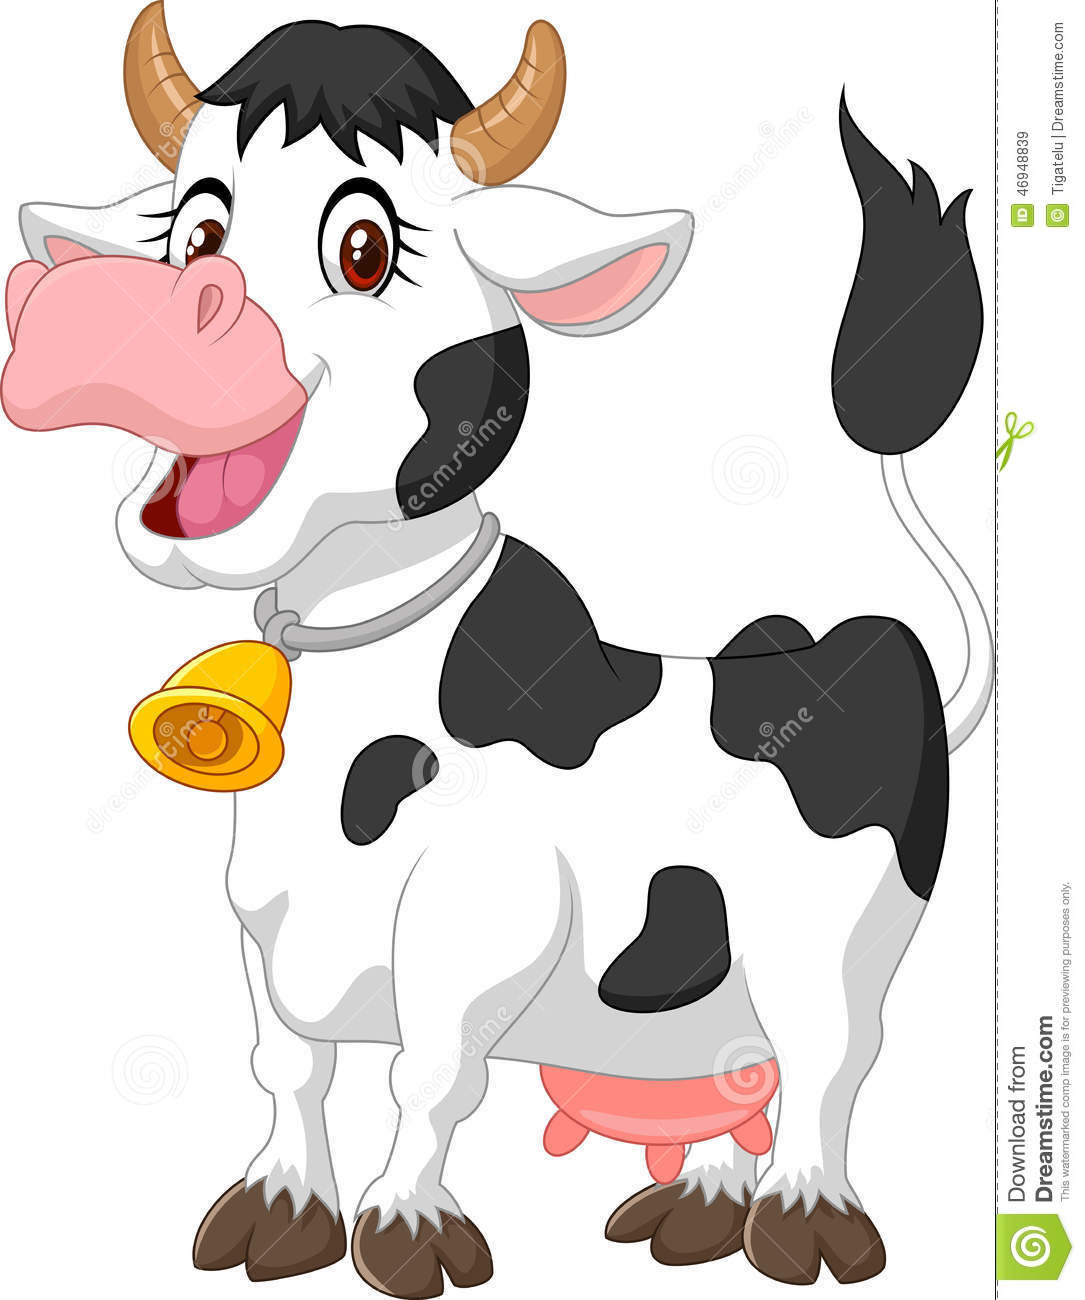 Dessin de vache en couleur